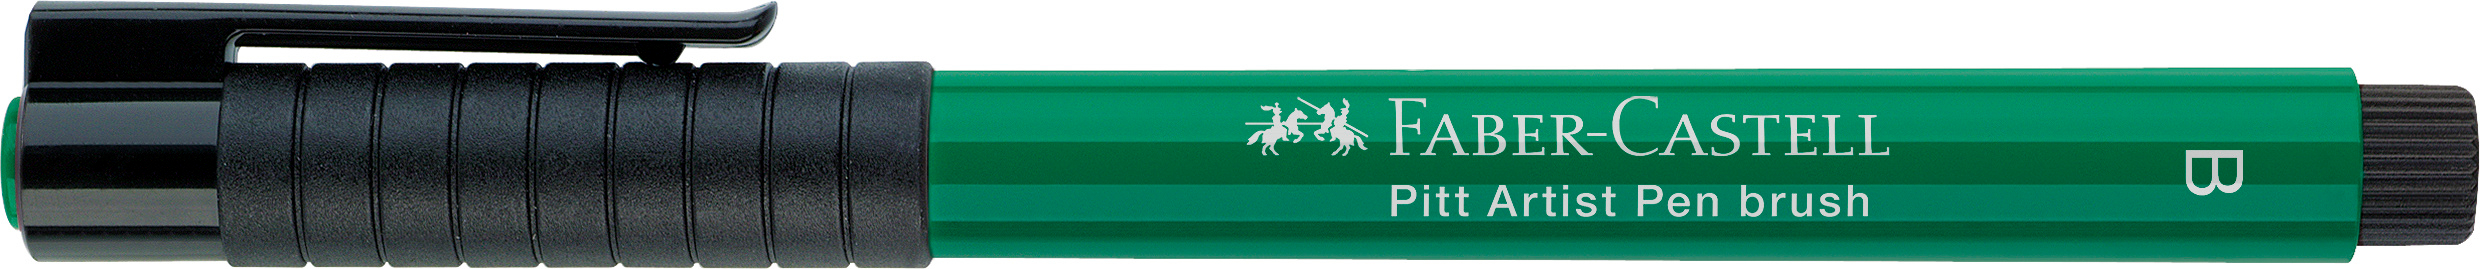 FABER-CASTELL Pitt Artist Pen Brush 2.5mm 167478 dark phthalo green